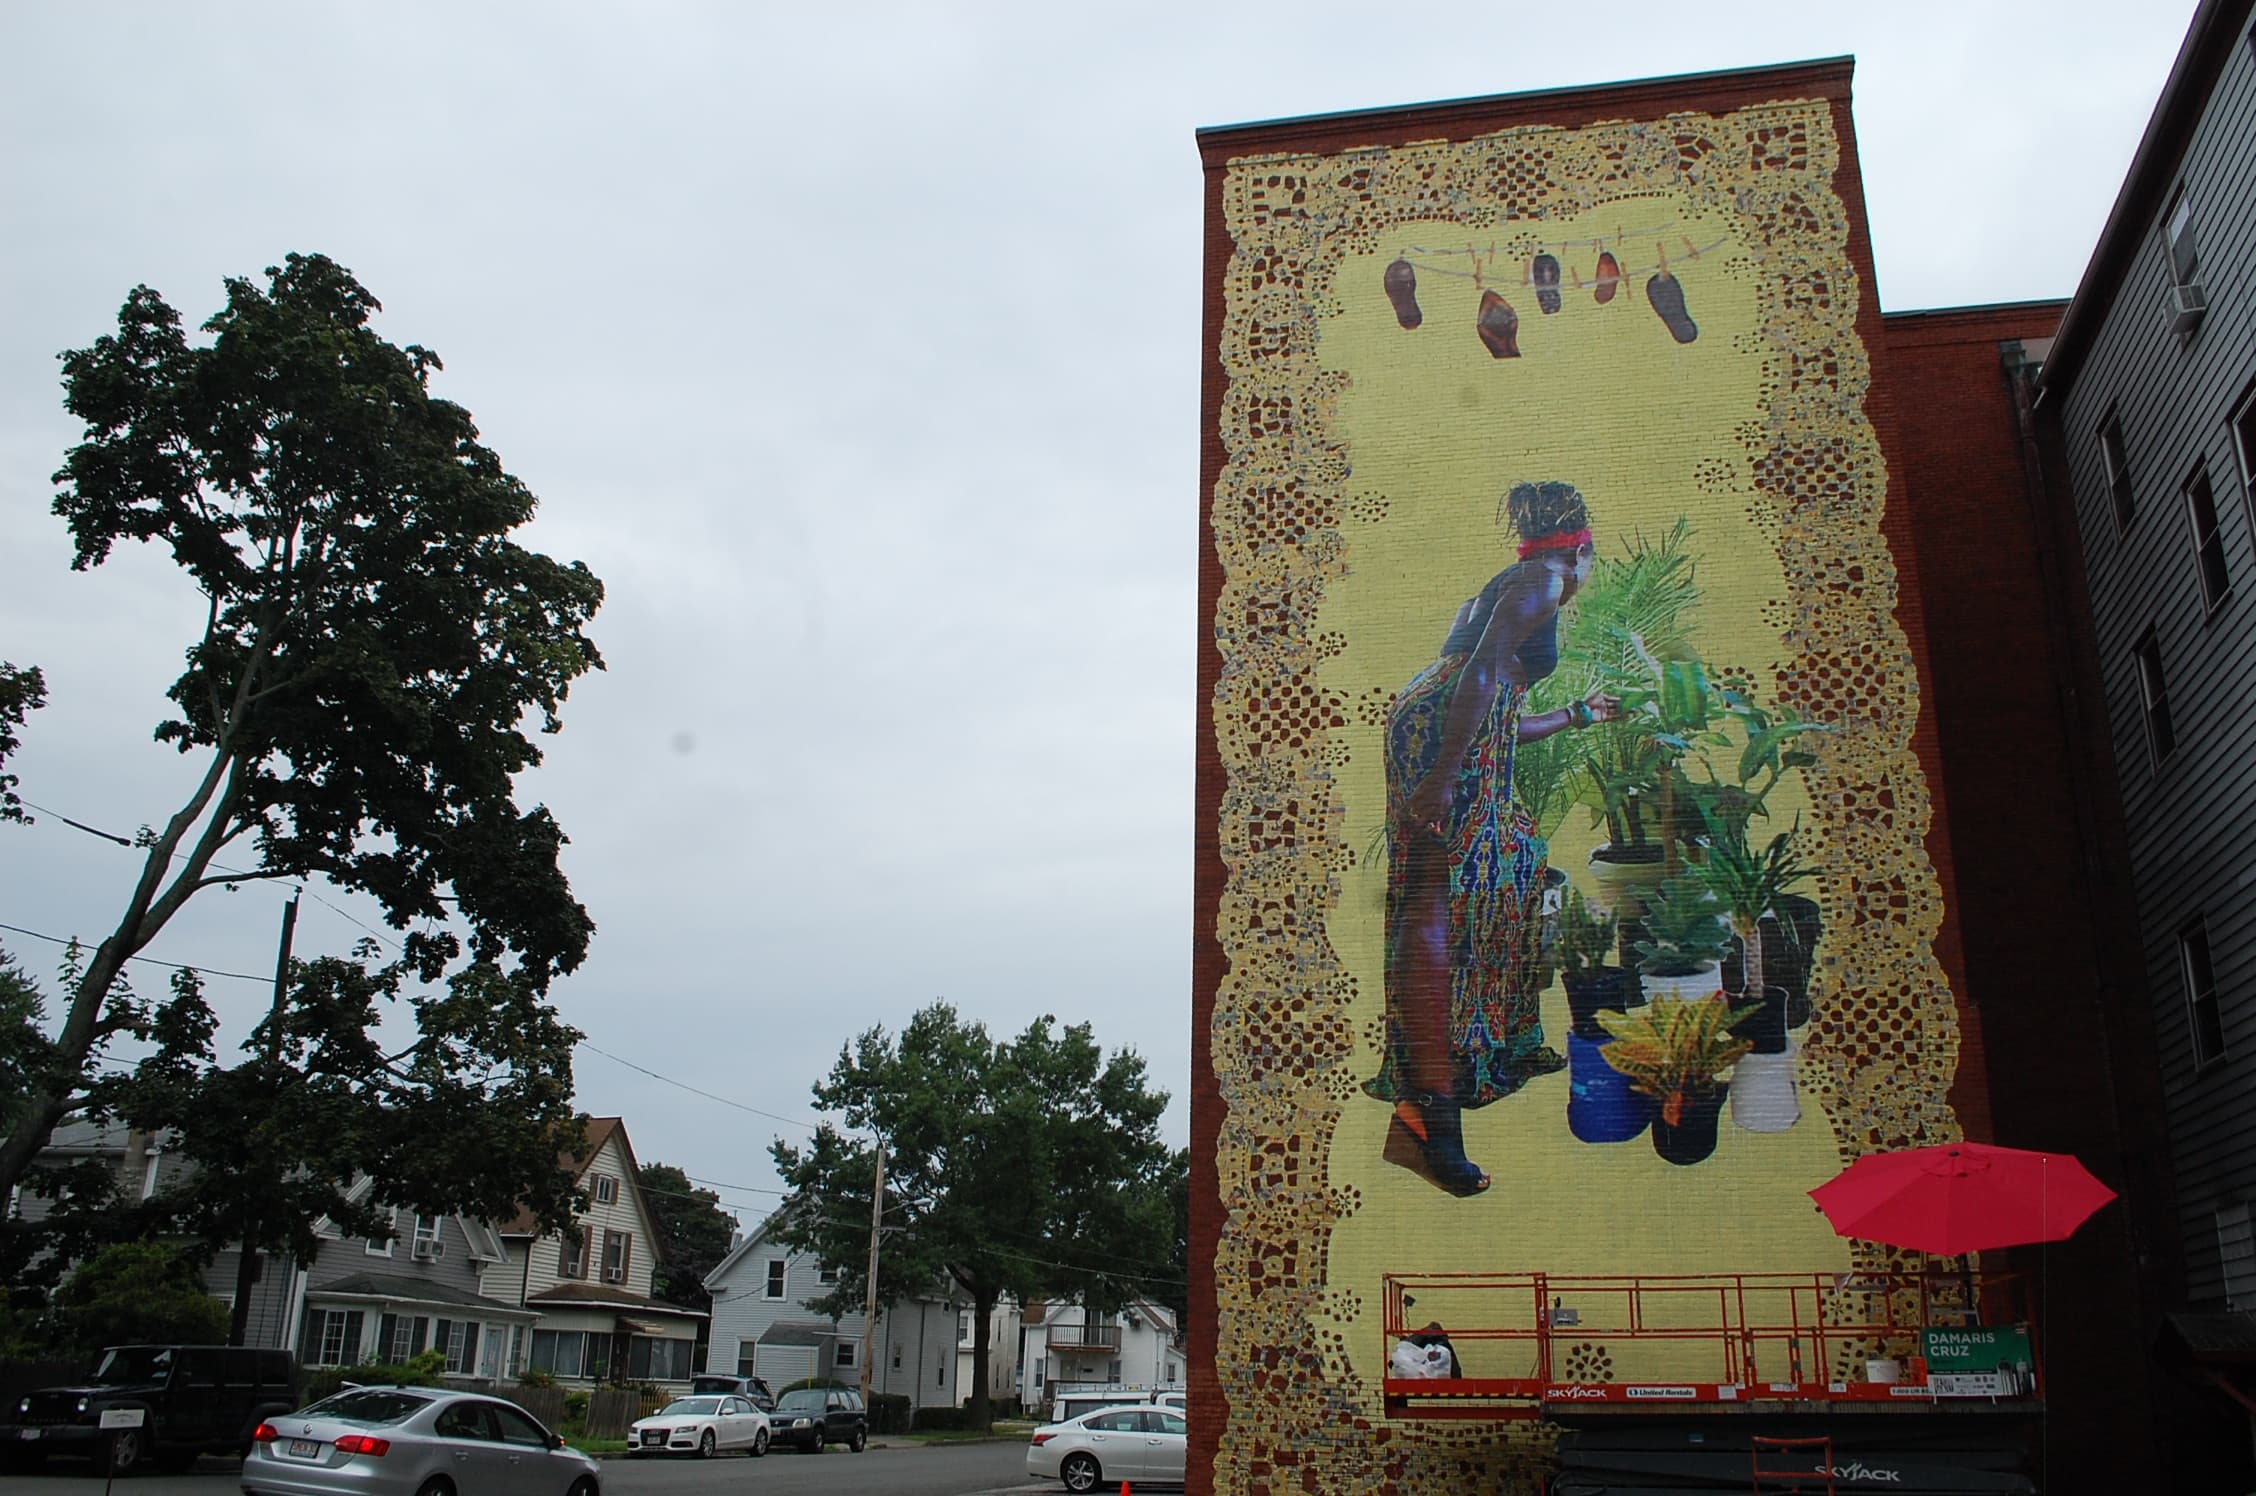 Our Favorite Street Art From Lynns Beyond Walls Mural Festival Wbur News